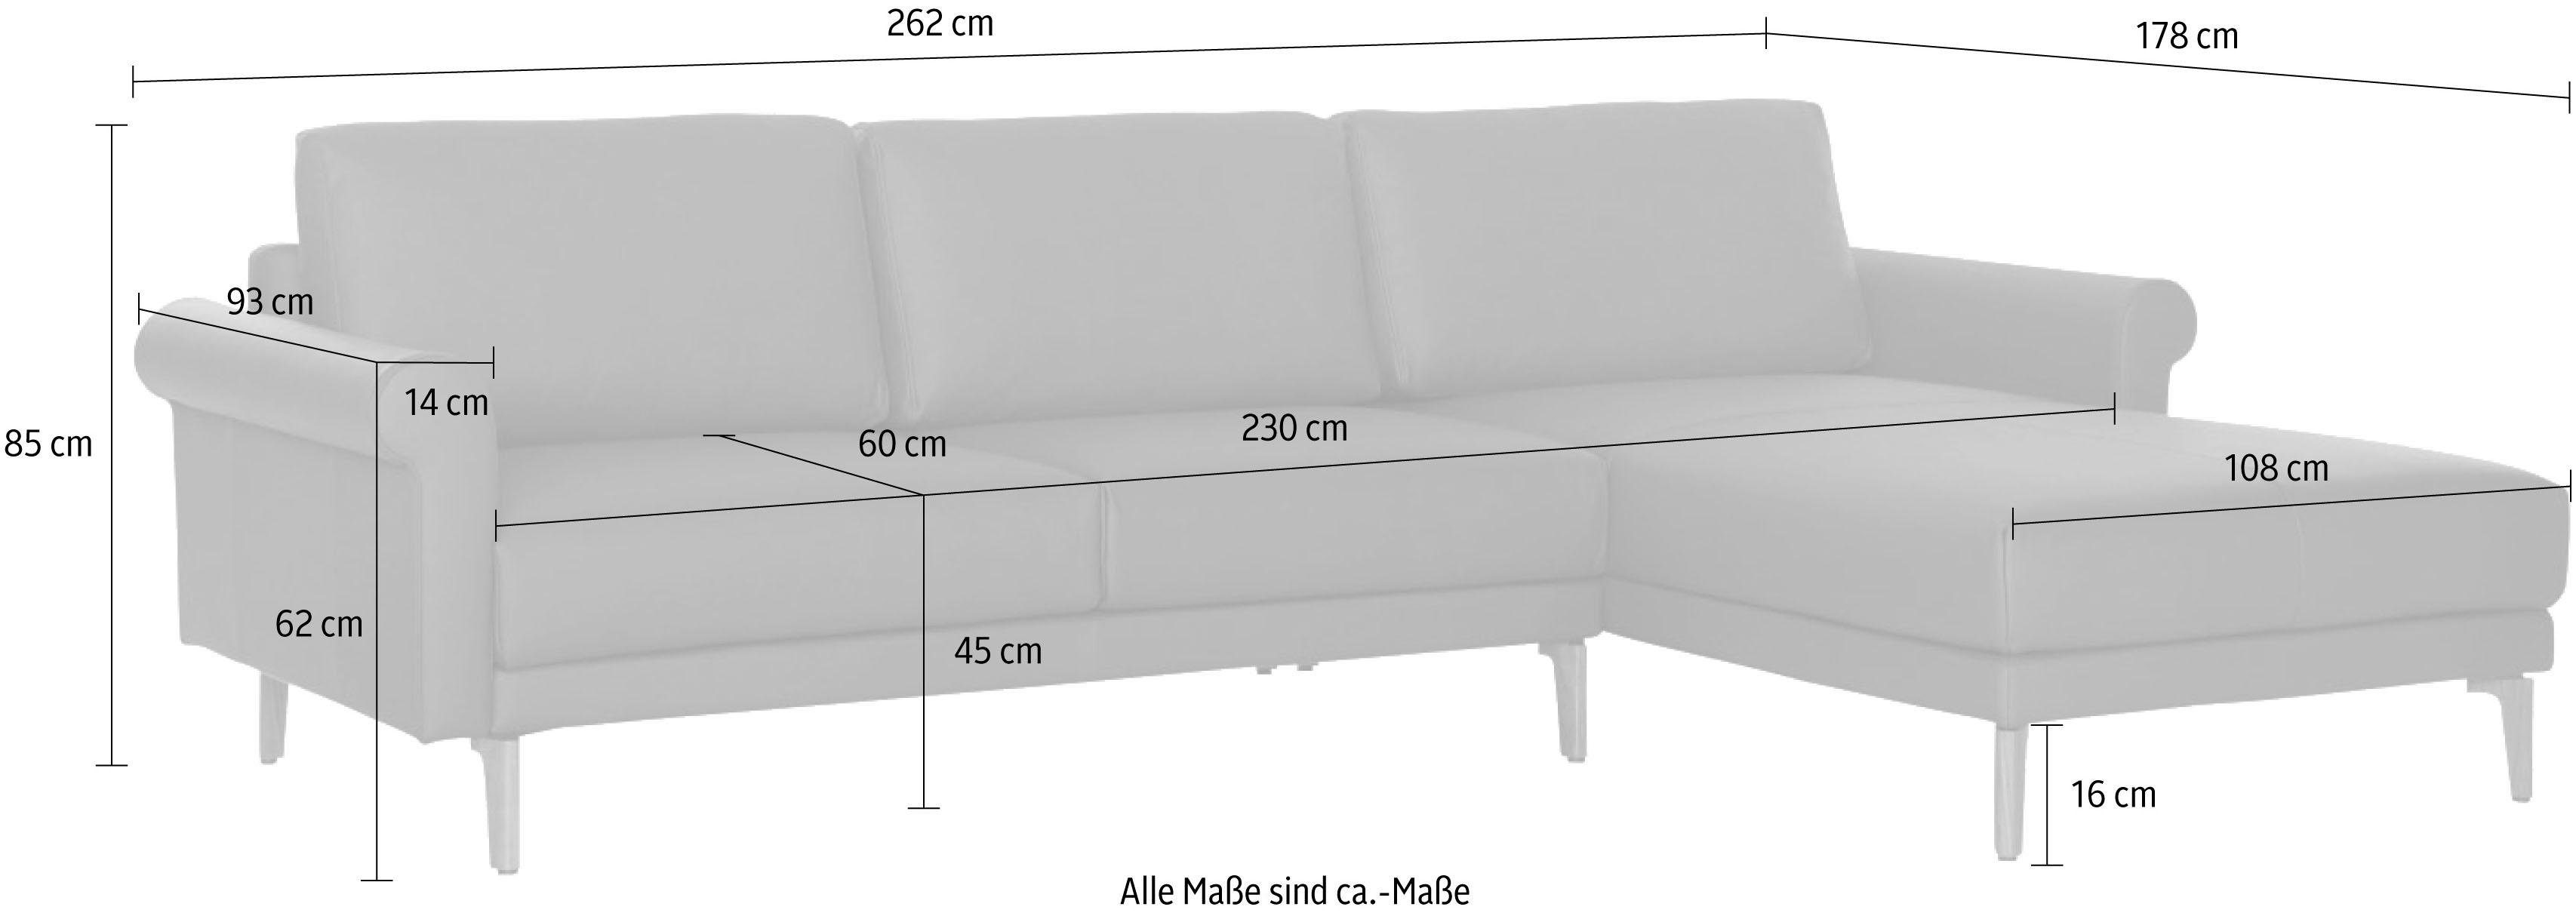 Nussbaum cm, Breite Landhaus, 262 Schnecke Fuß modern hs.450, sofa hülsta Ecksofa Armlehne